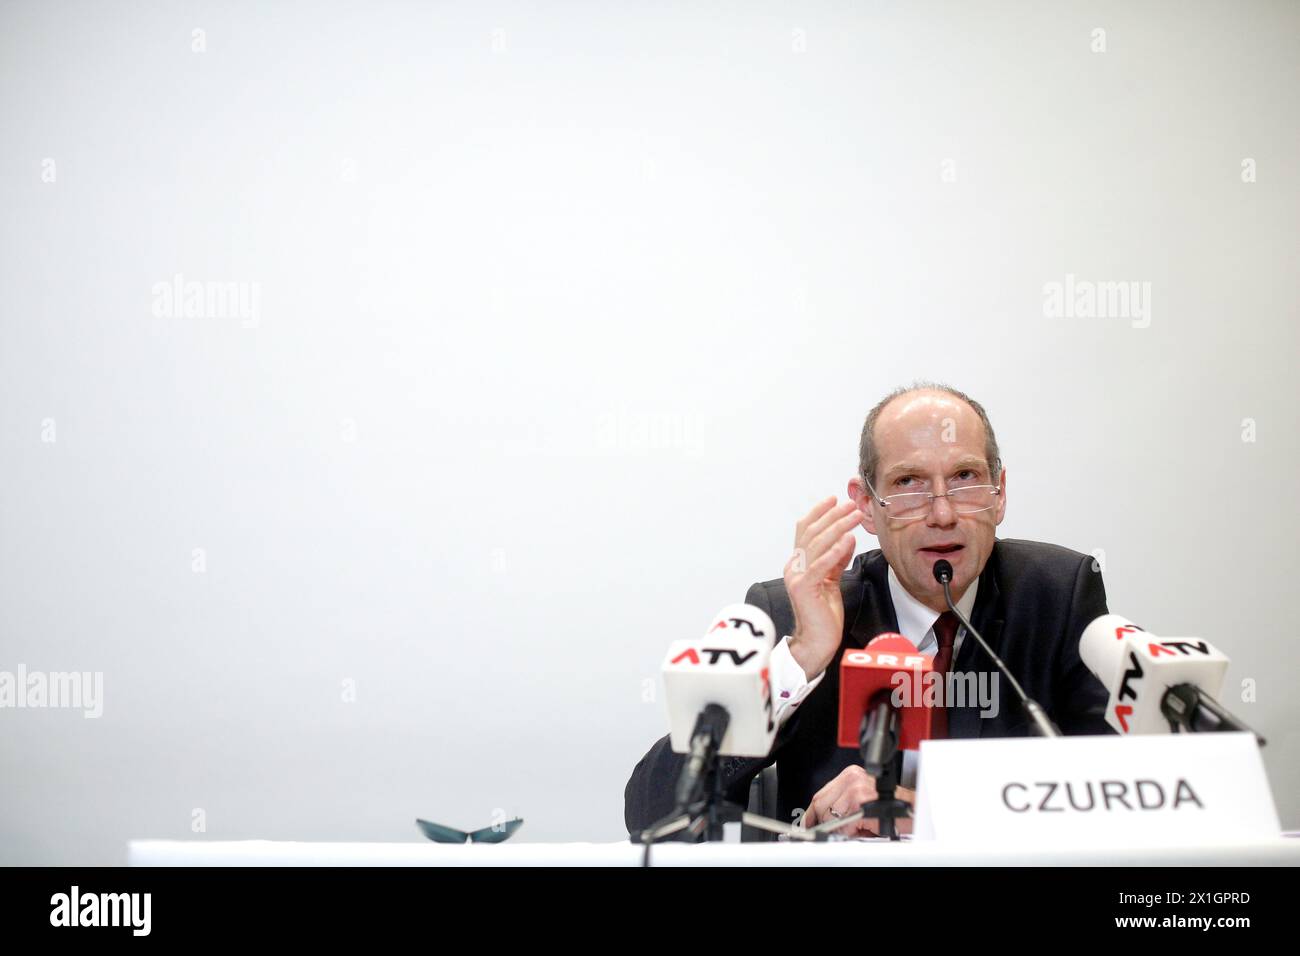 Le président désigné de la Hypo Alpe Adria Bank Martin Czurda lors d'une conférence de presse à Vienne le 19 décembre 2013. - 20131219 PD1257 - Rechteinfo : droits gérés (RM) Banque D'Images